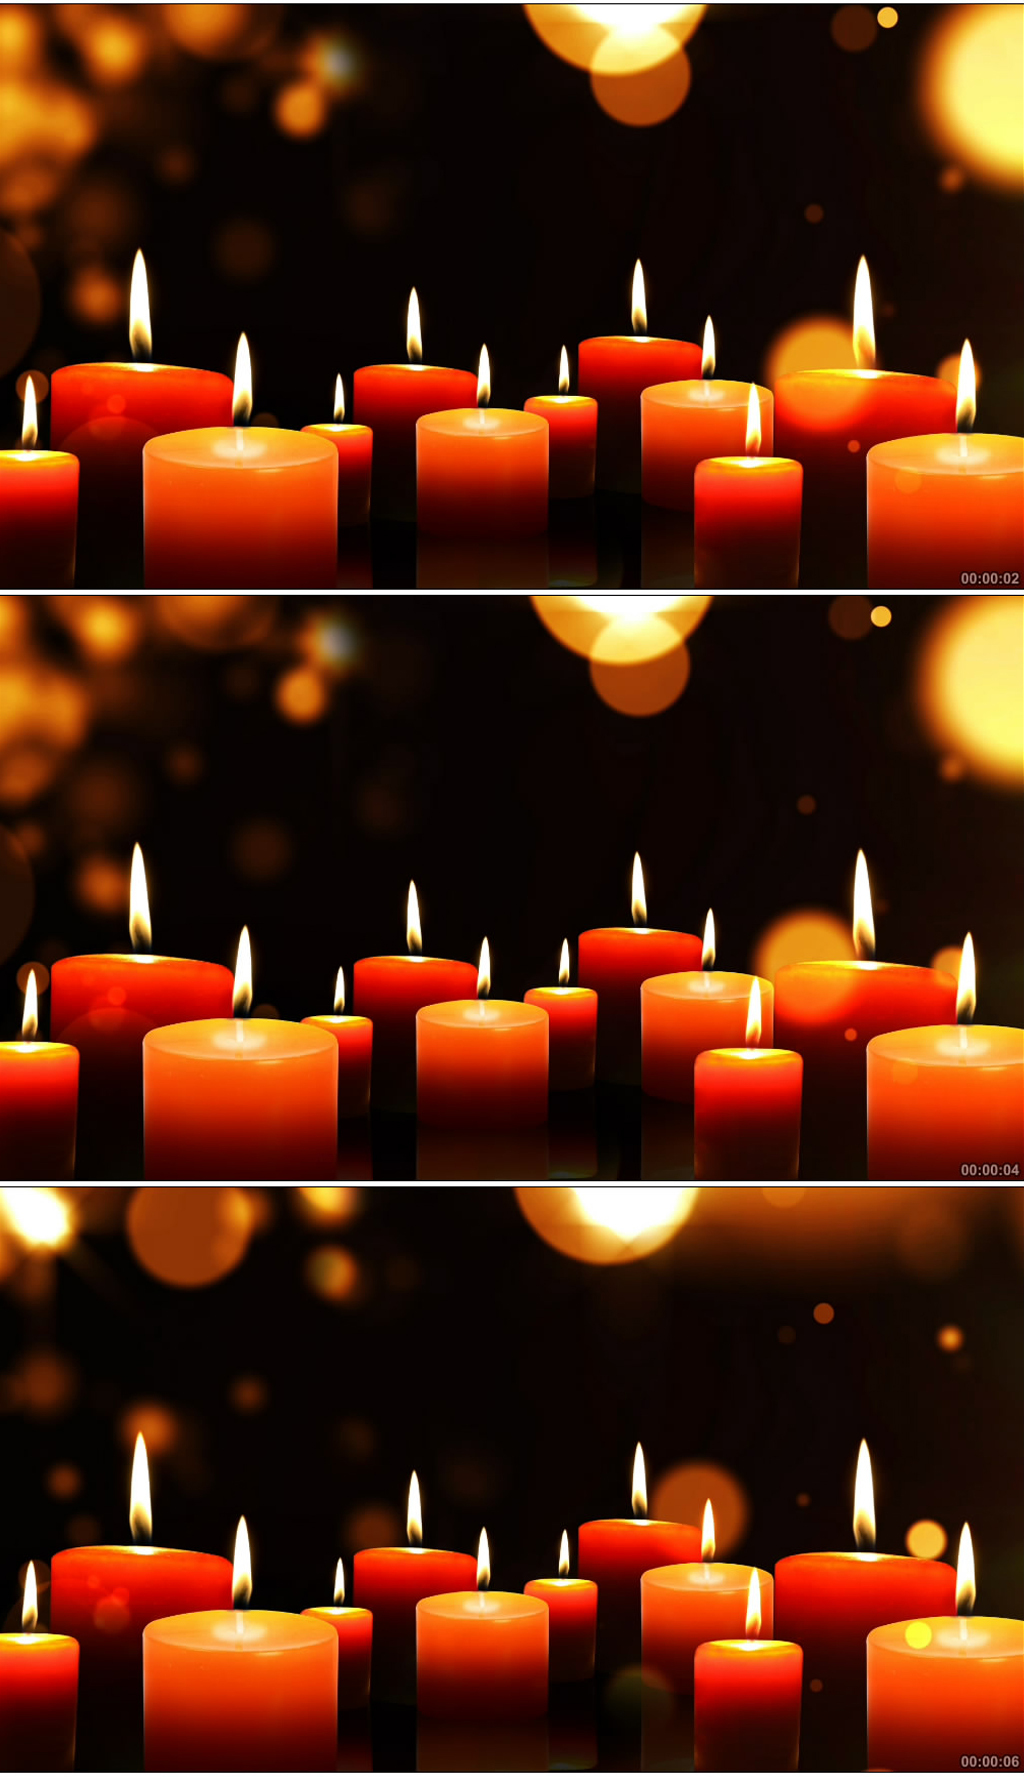 图片素材 : 教会, 灯光, 宏观摄影, 燃烧的蜡烛 3744x5616 - - 872414 - 素材中国, 高清壁纸 - PxHere摄影图库